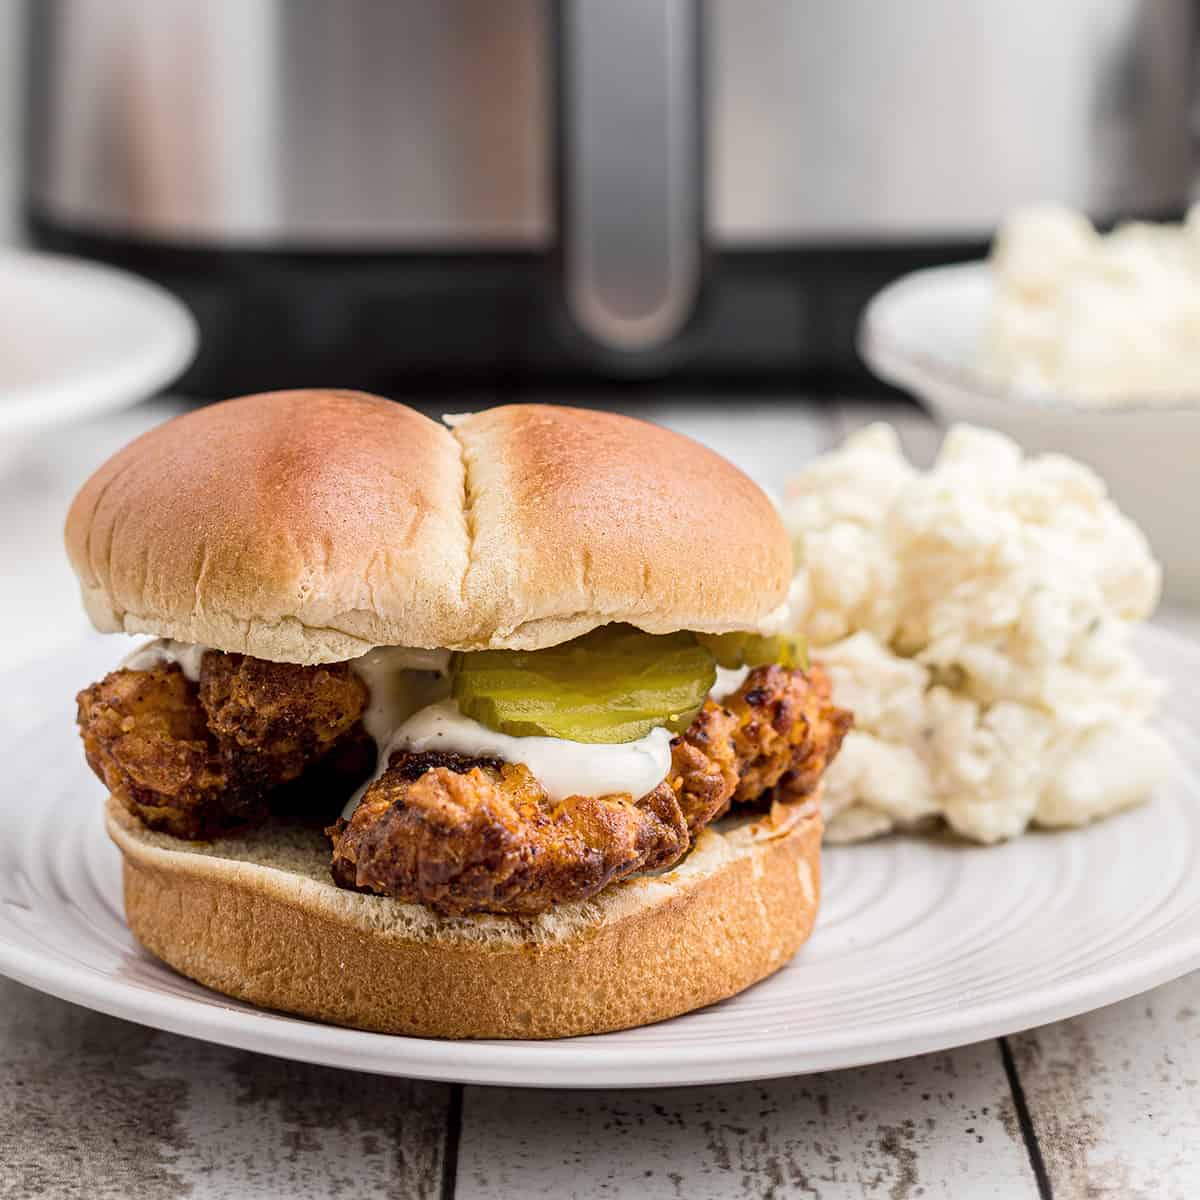 Nashville hot chicken sandwich on a white plate.